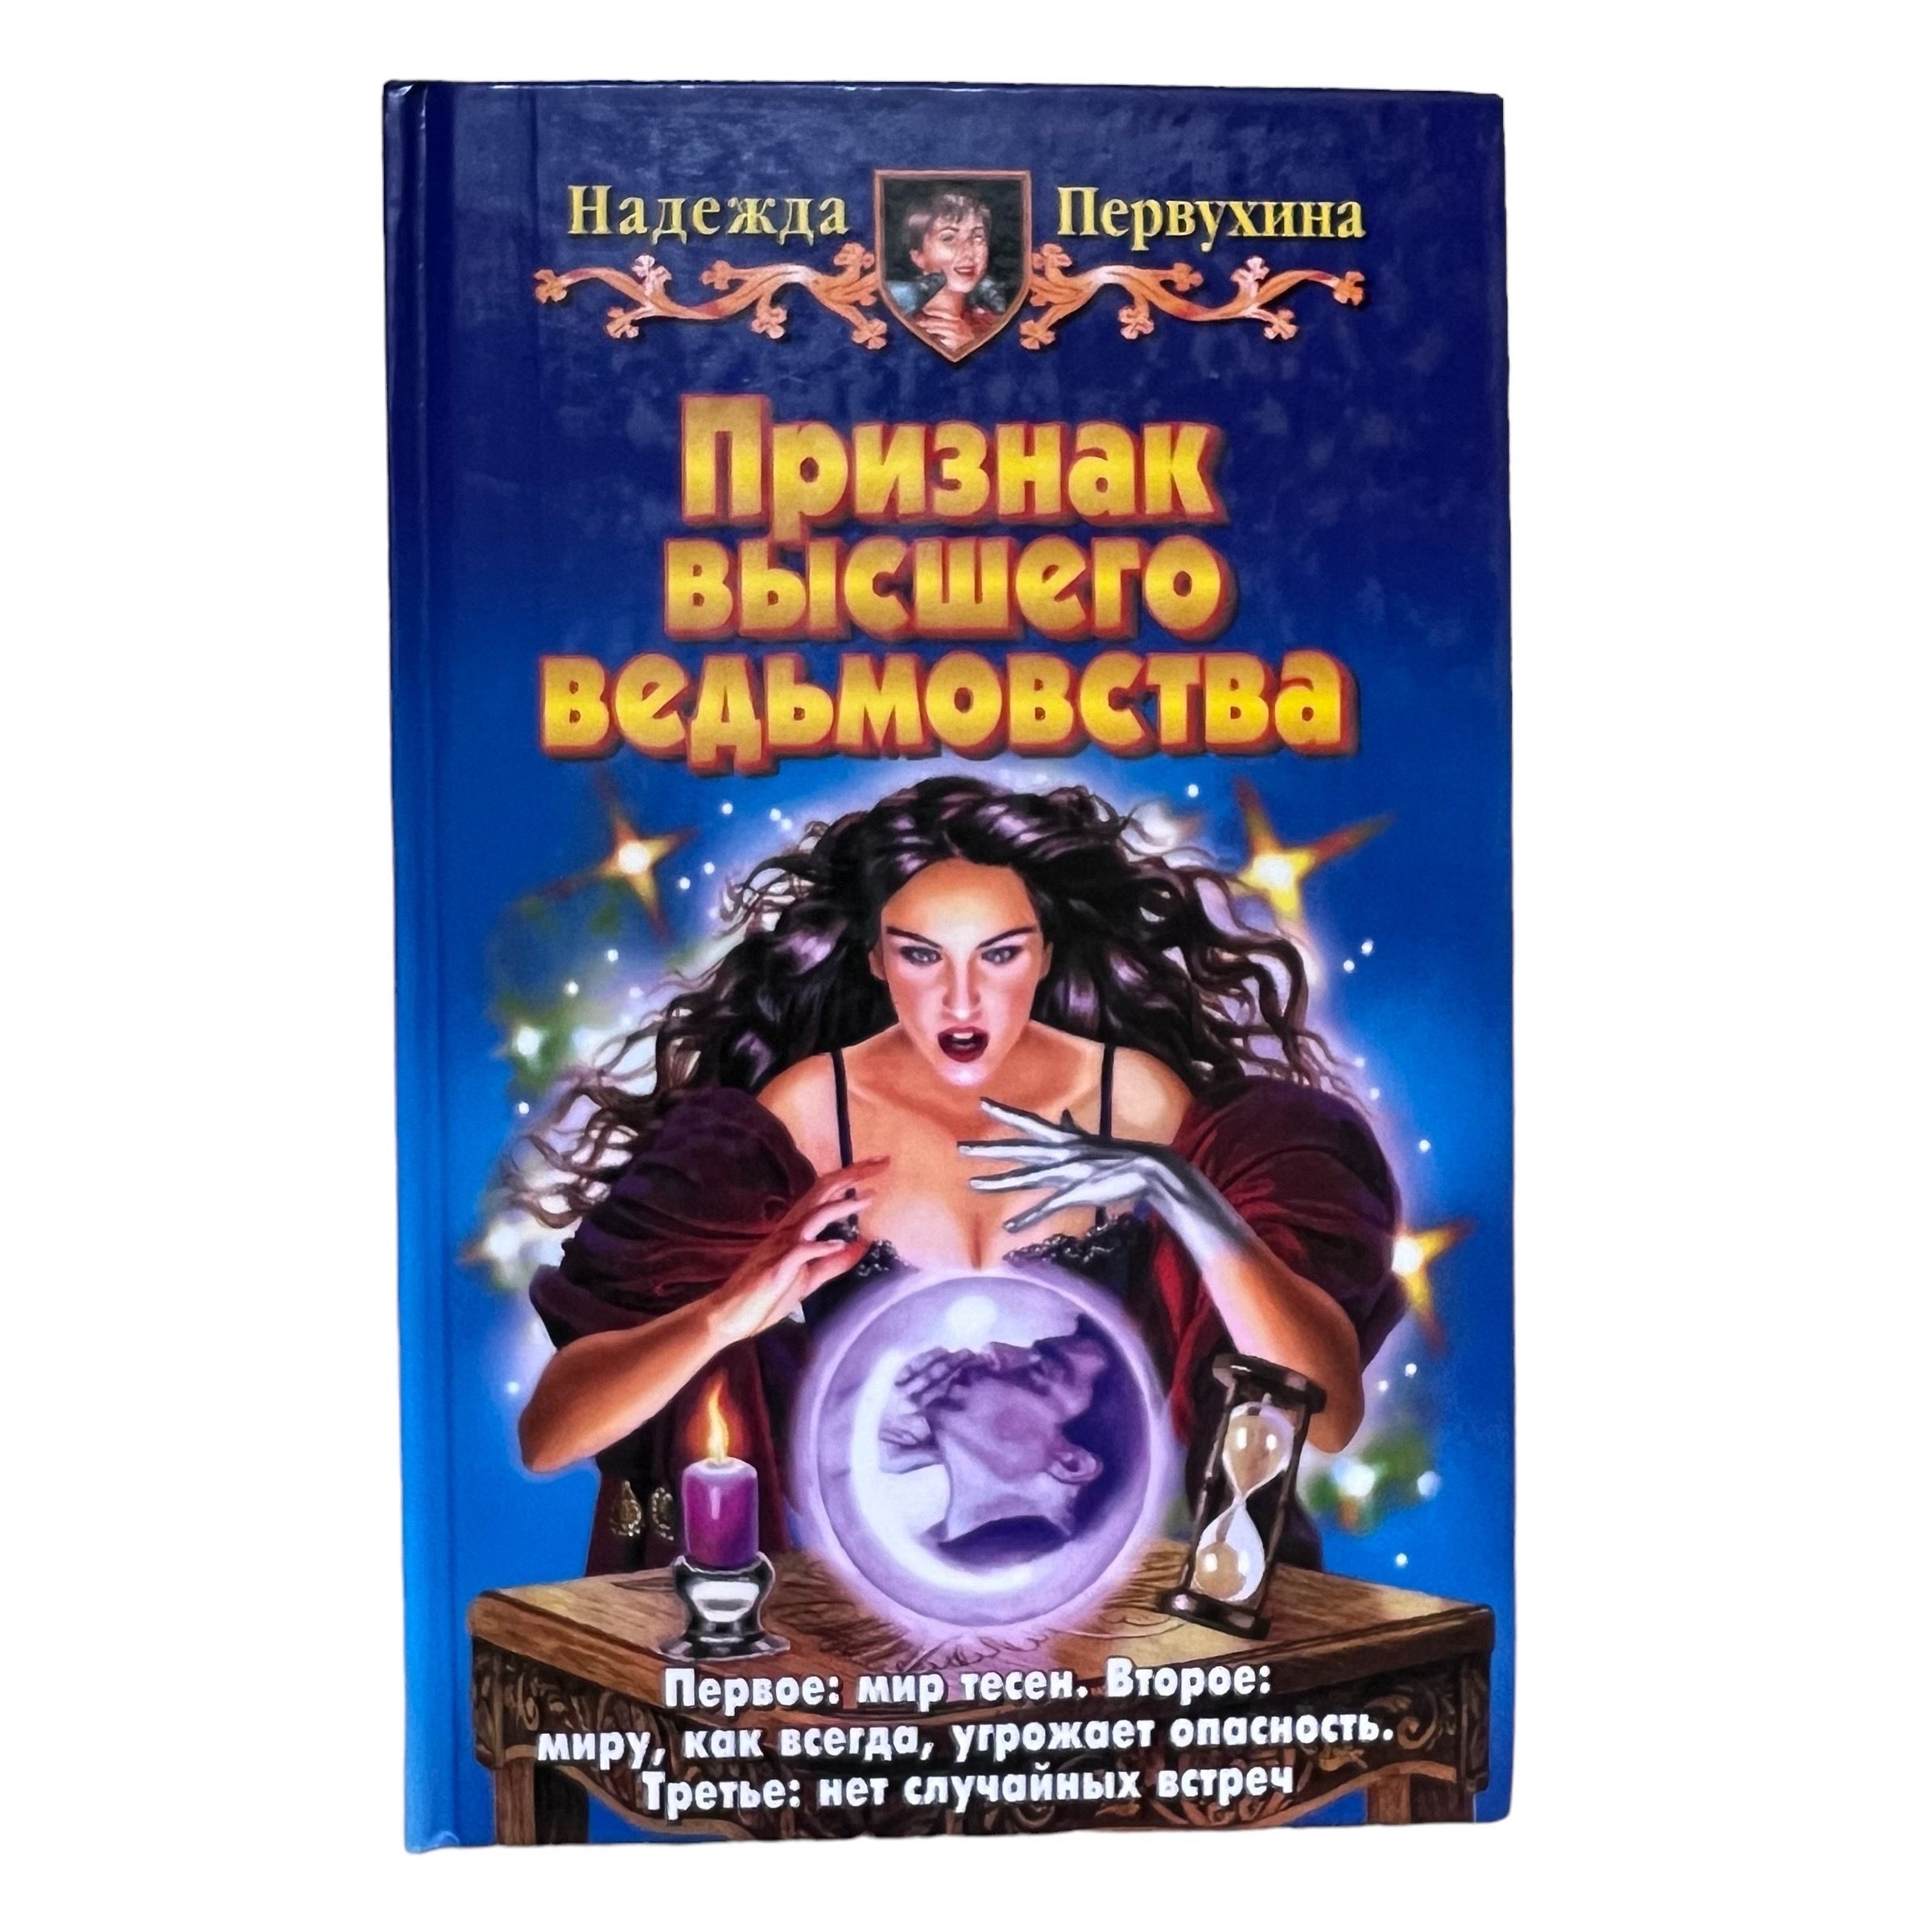 Купить в Новосибирске книгу Петербург для детей Первухина.